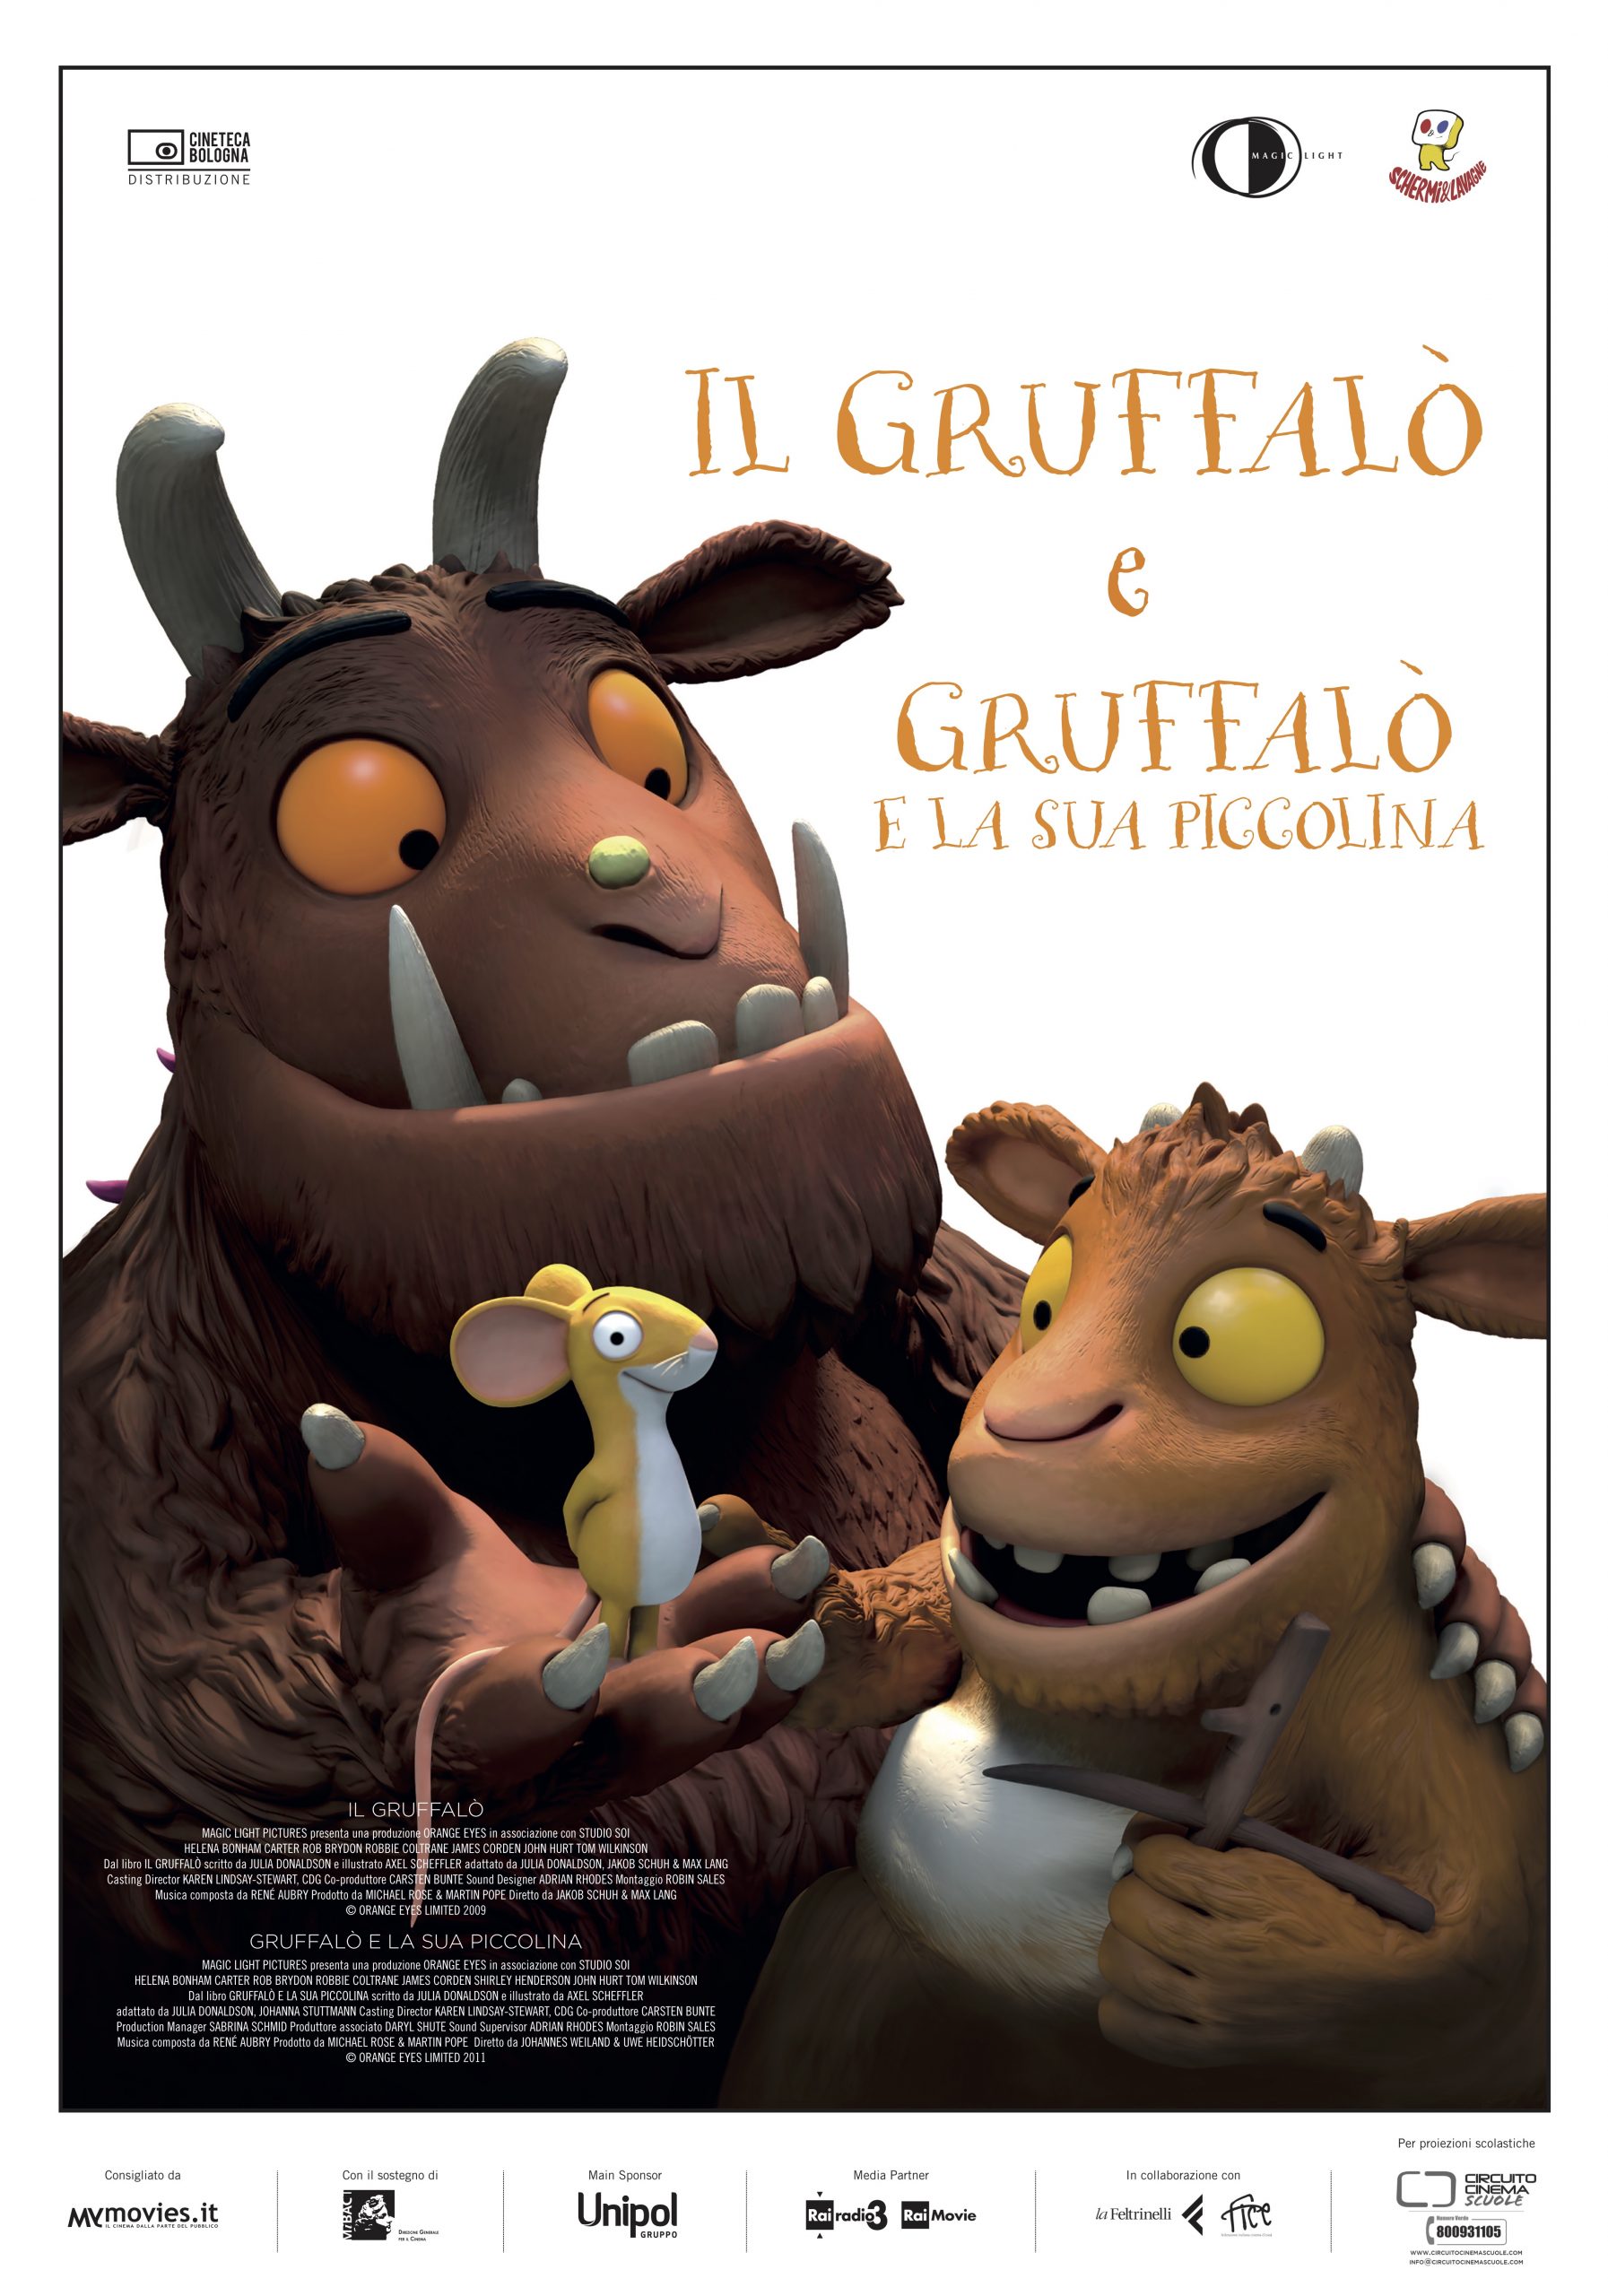 Versiliana Cinema: Il Gruffalò e Il Gruffalò e la sua piccolina - film -  Versiliana Festival